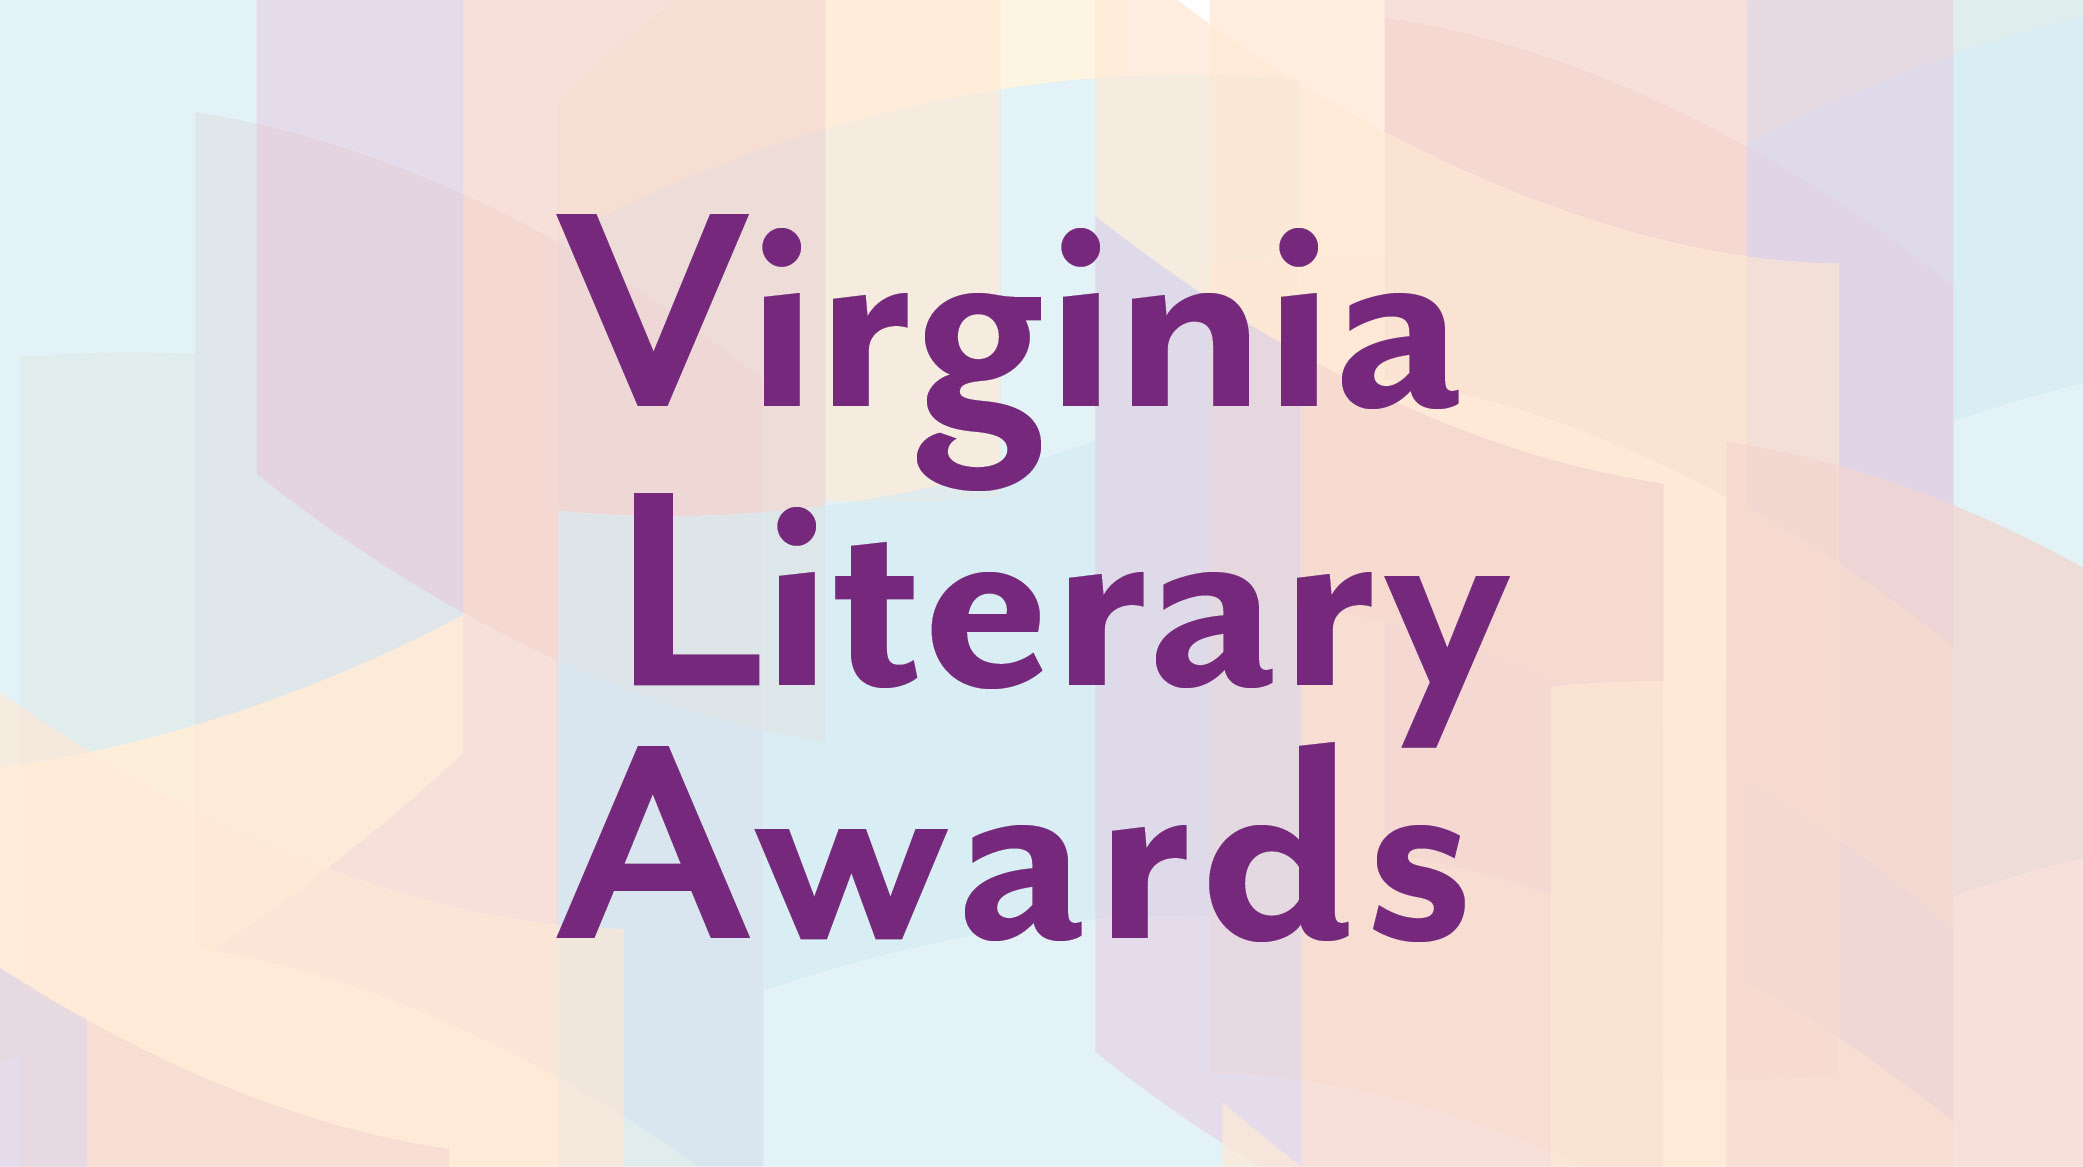 25th Anniversary Virginia Literary Awards Celebration October 14-15, 2022